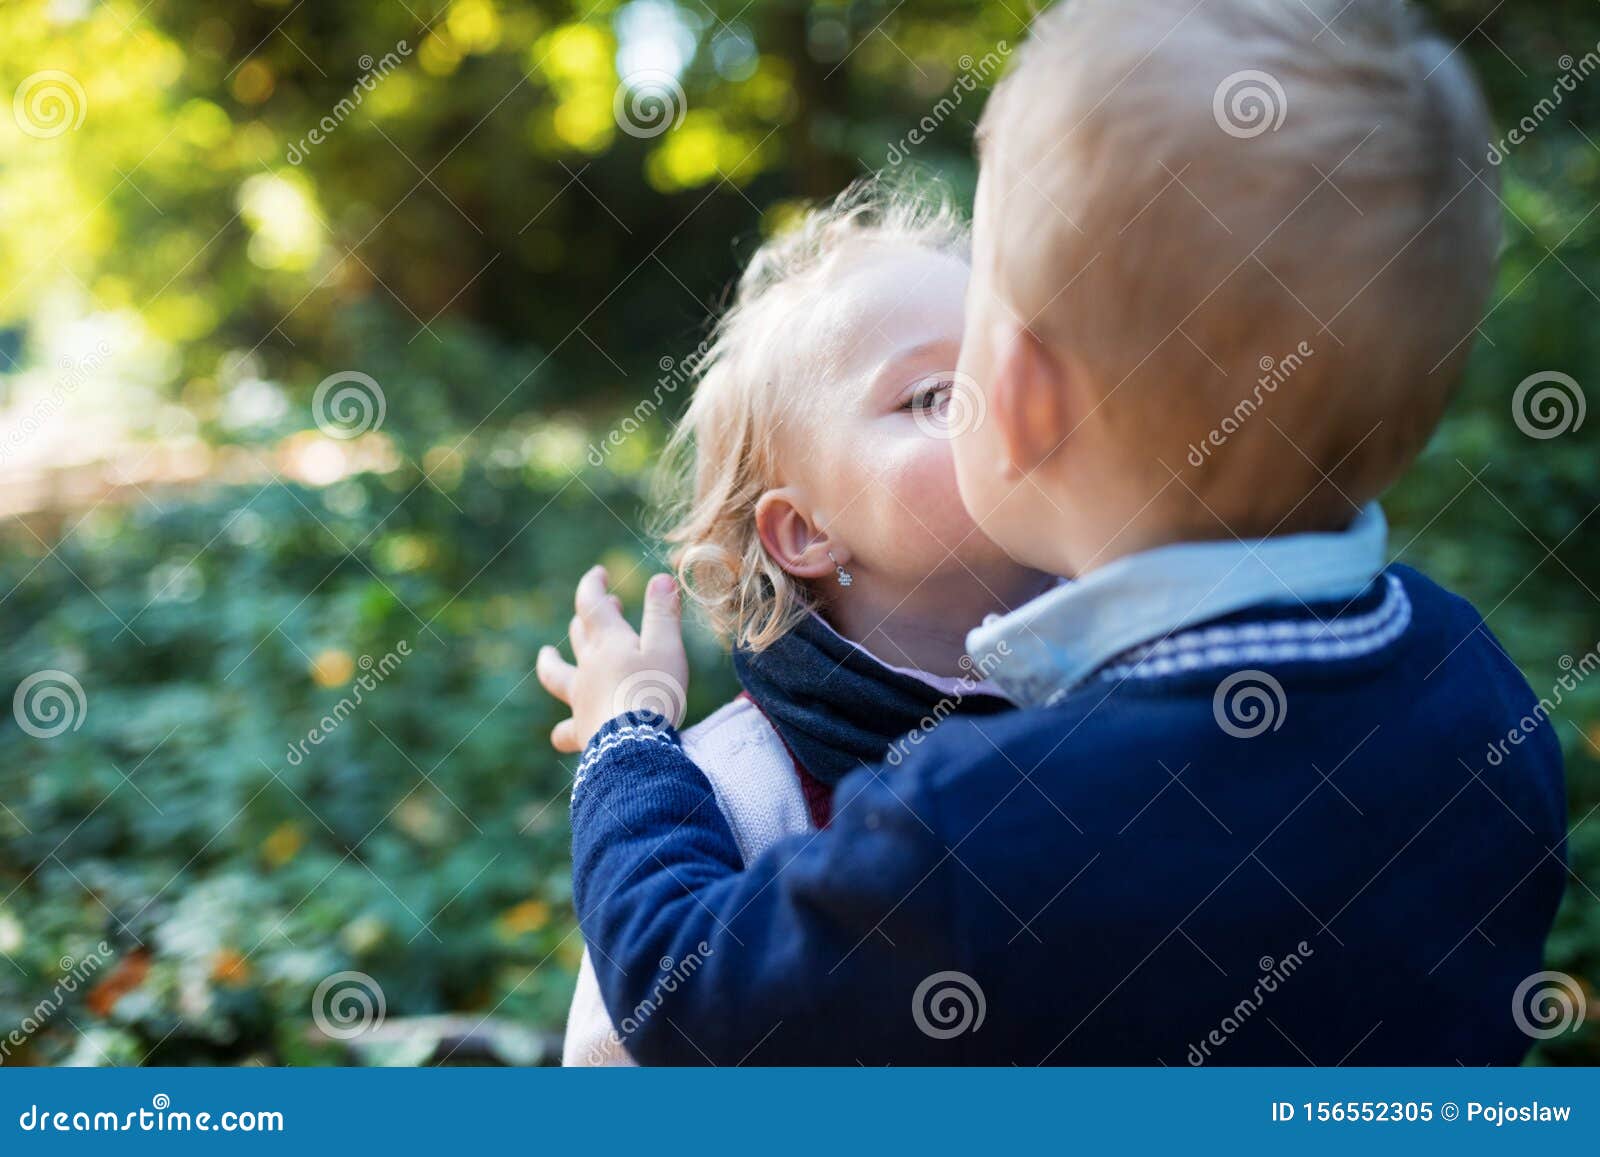 Мальчика девочку которую целуются в лесу. Поцеловал мальчика в живот